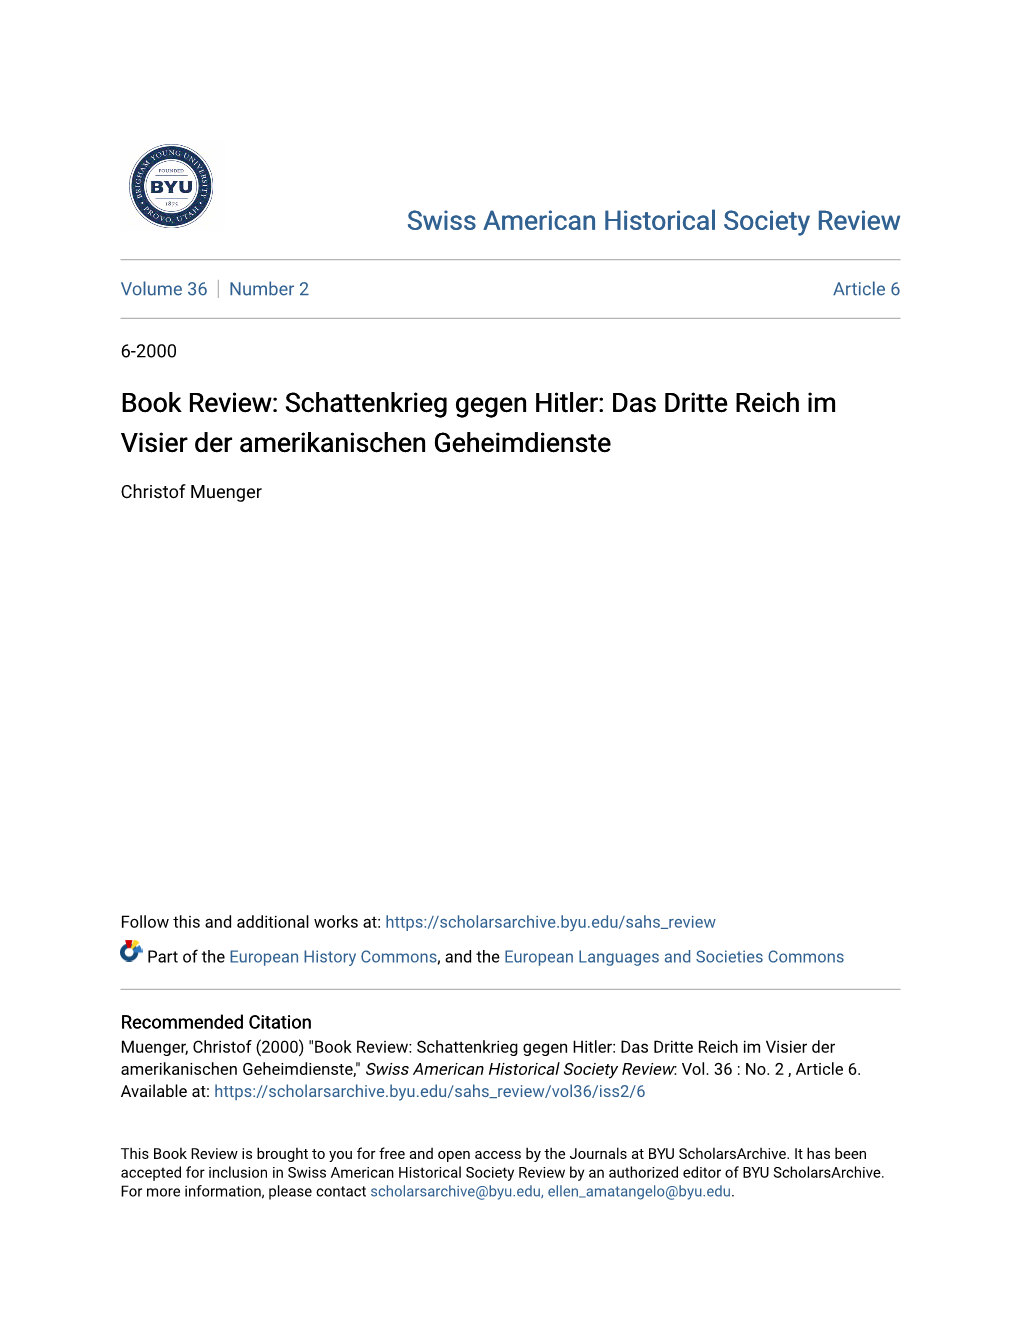 Book Review: Schattenkrieg Gegen Hitler: Das Dritte Reich Im Visier Der Amerikanischen Geheimdienste